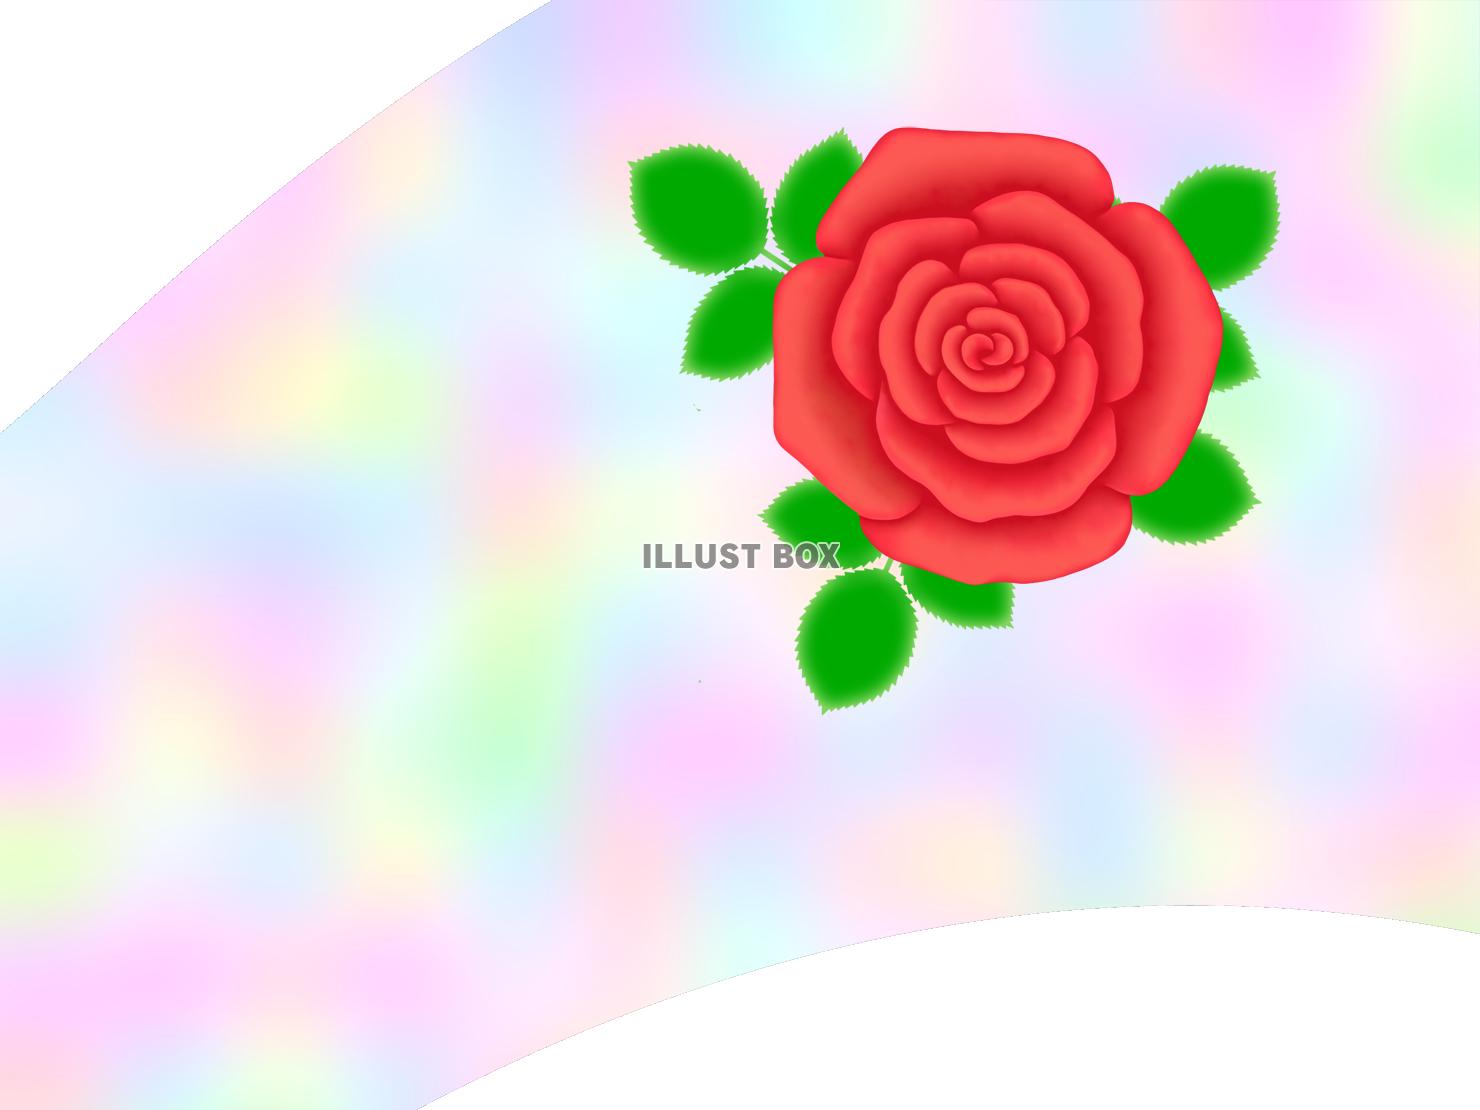 薔薇の花模様壁紙シンプル背景素材イラスト。透過PNG